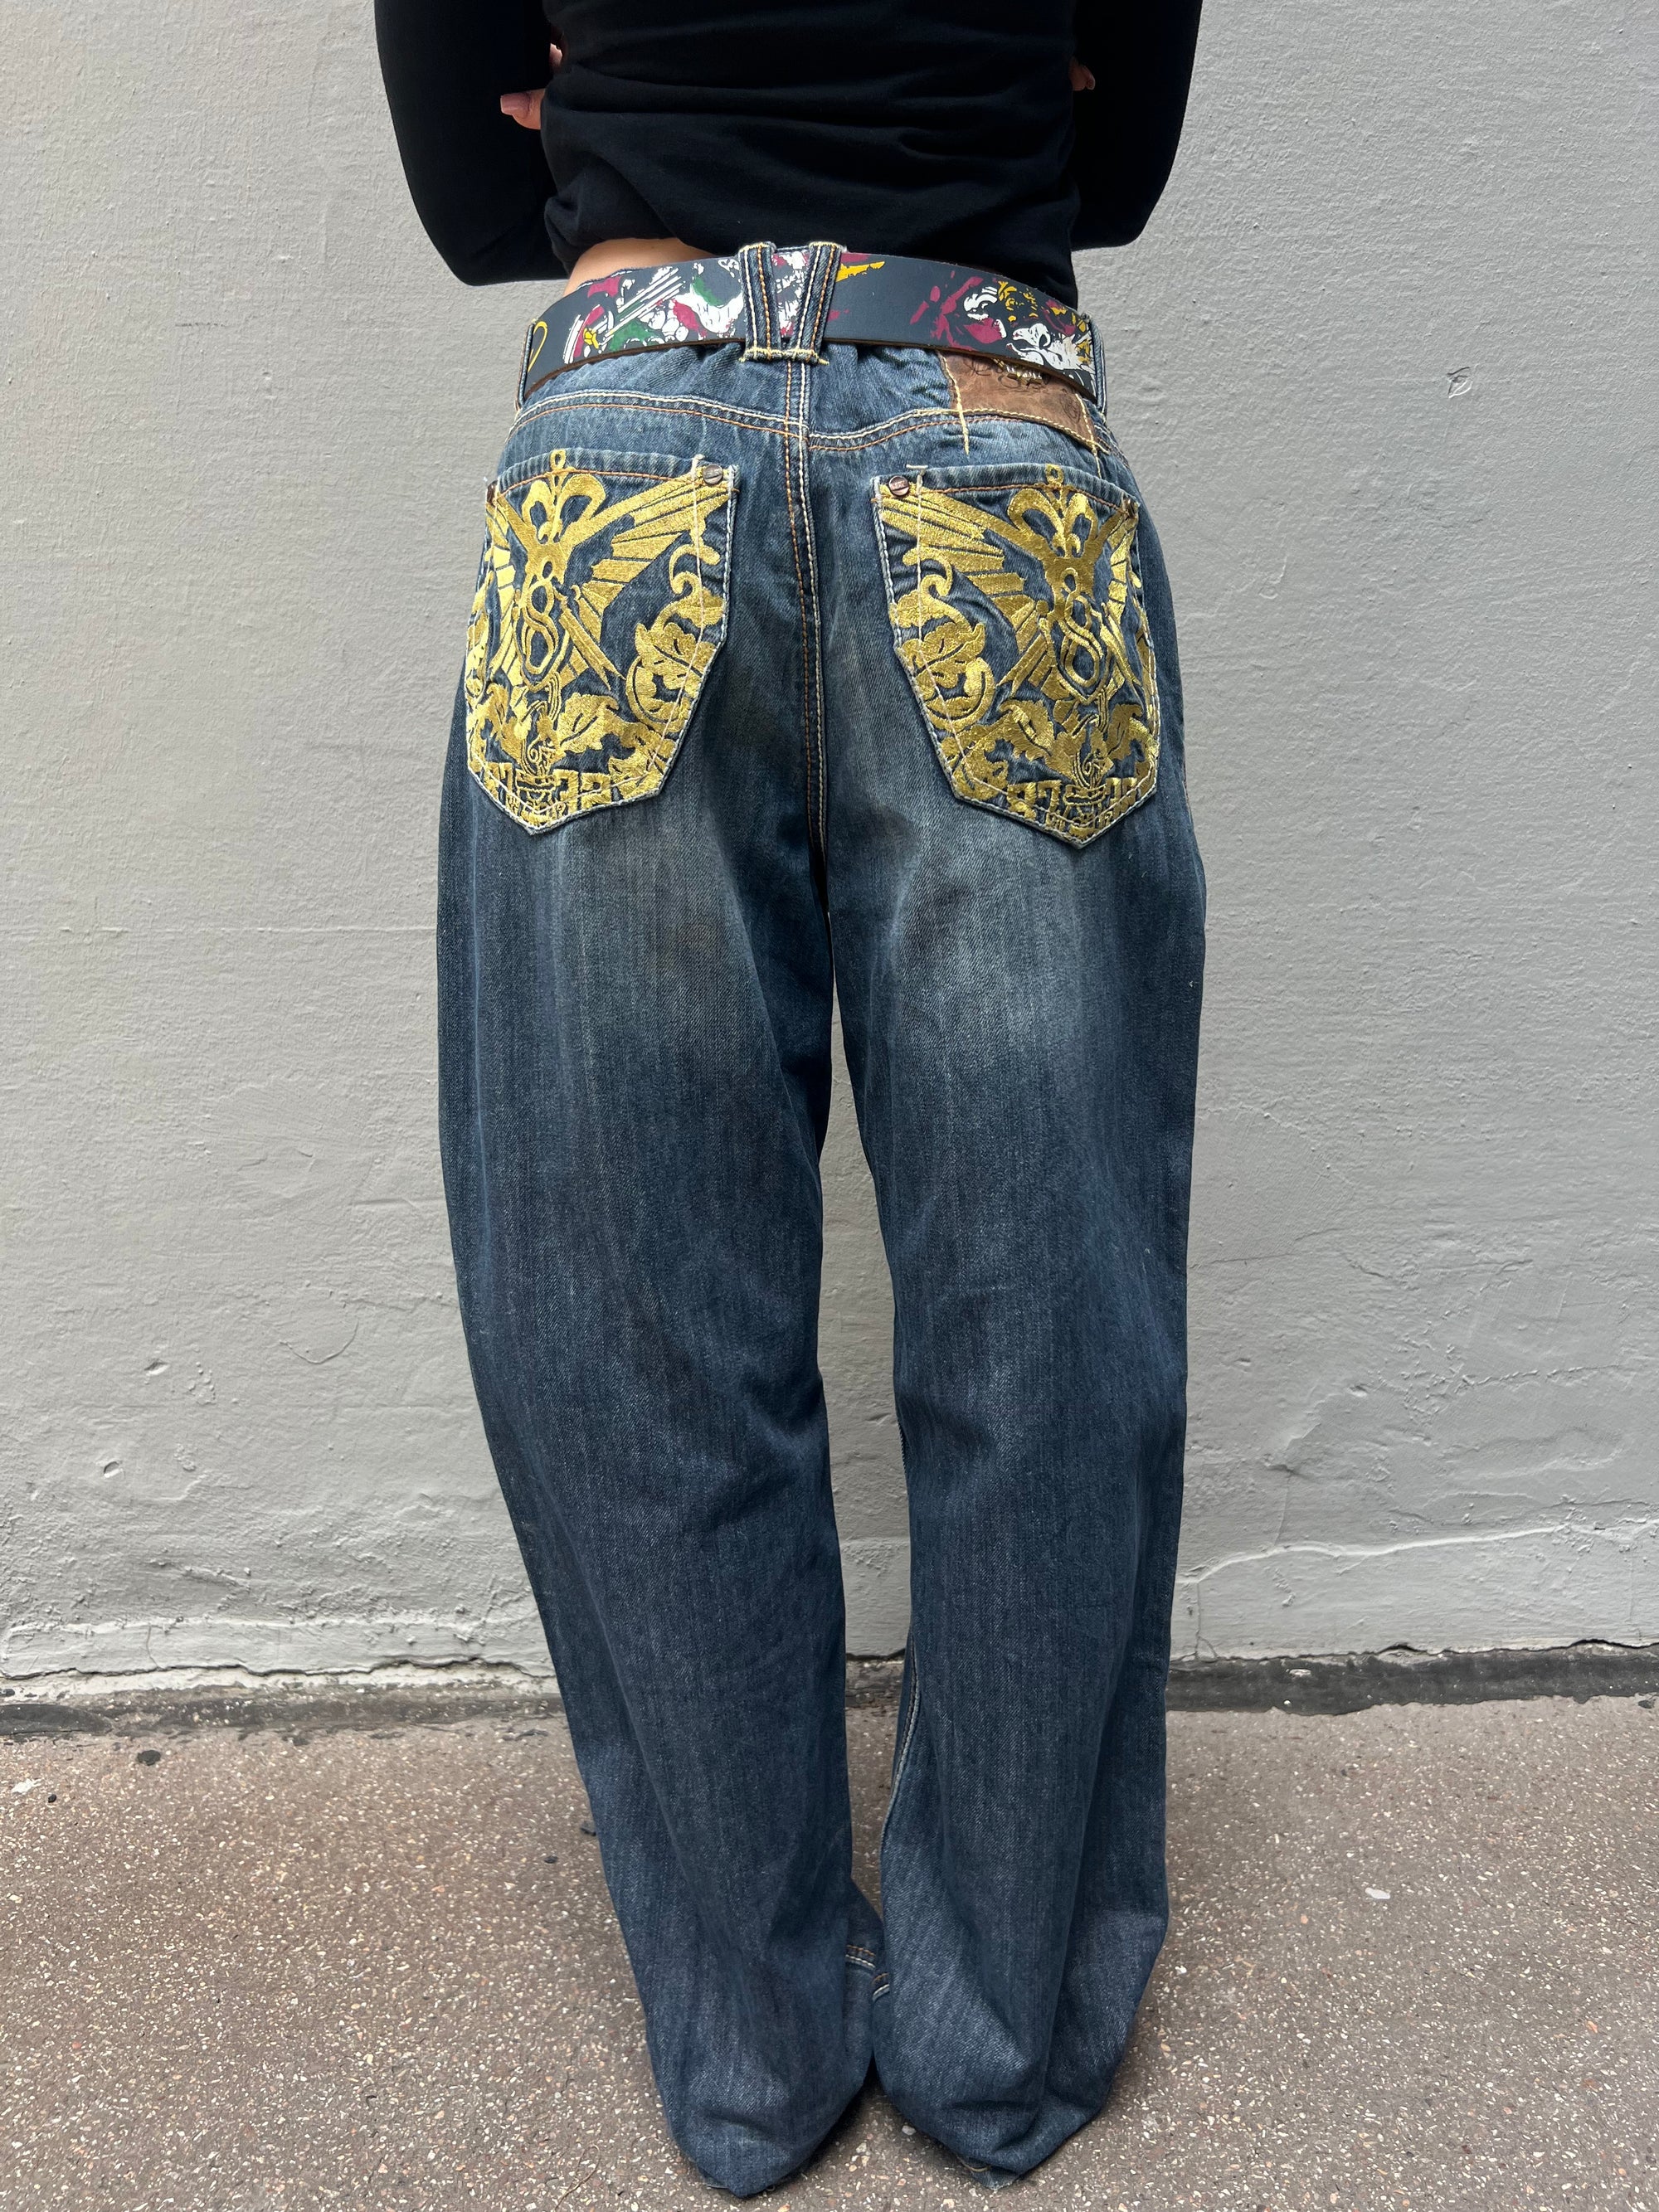 Zu sehen ist eine Vintage Baggy Ed Hardy Jeans getragen vor einem grauen Hintergrund